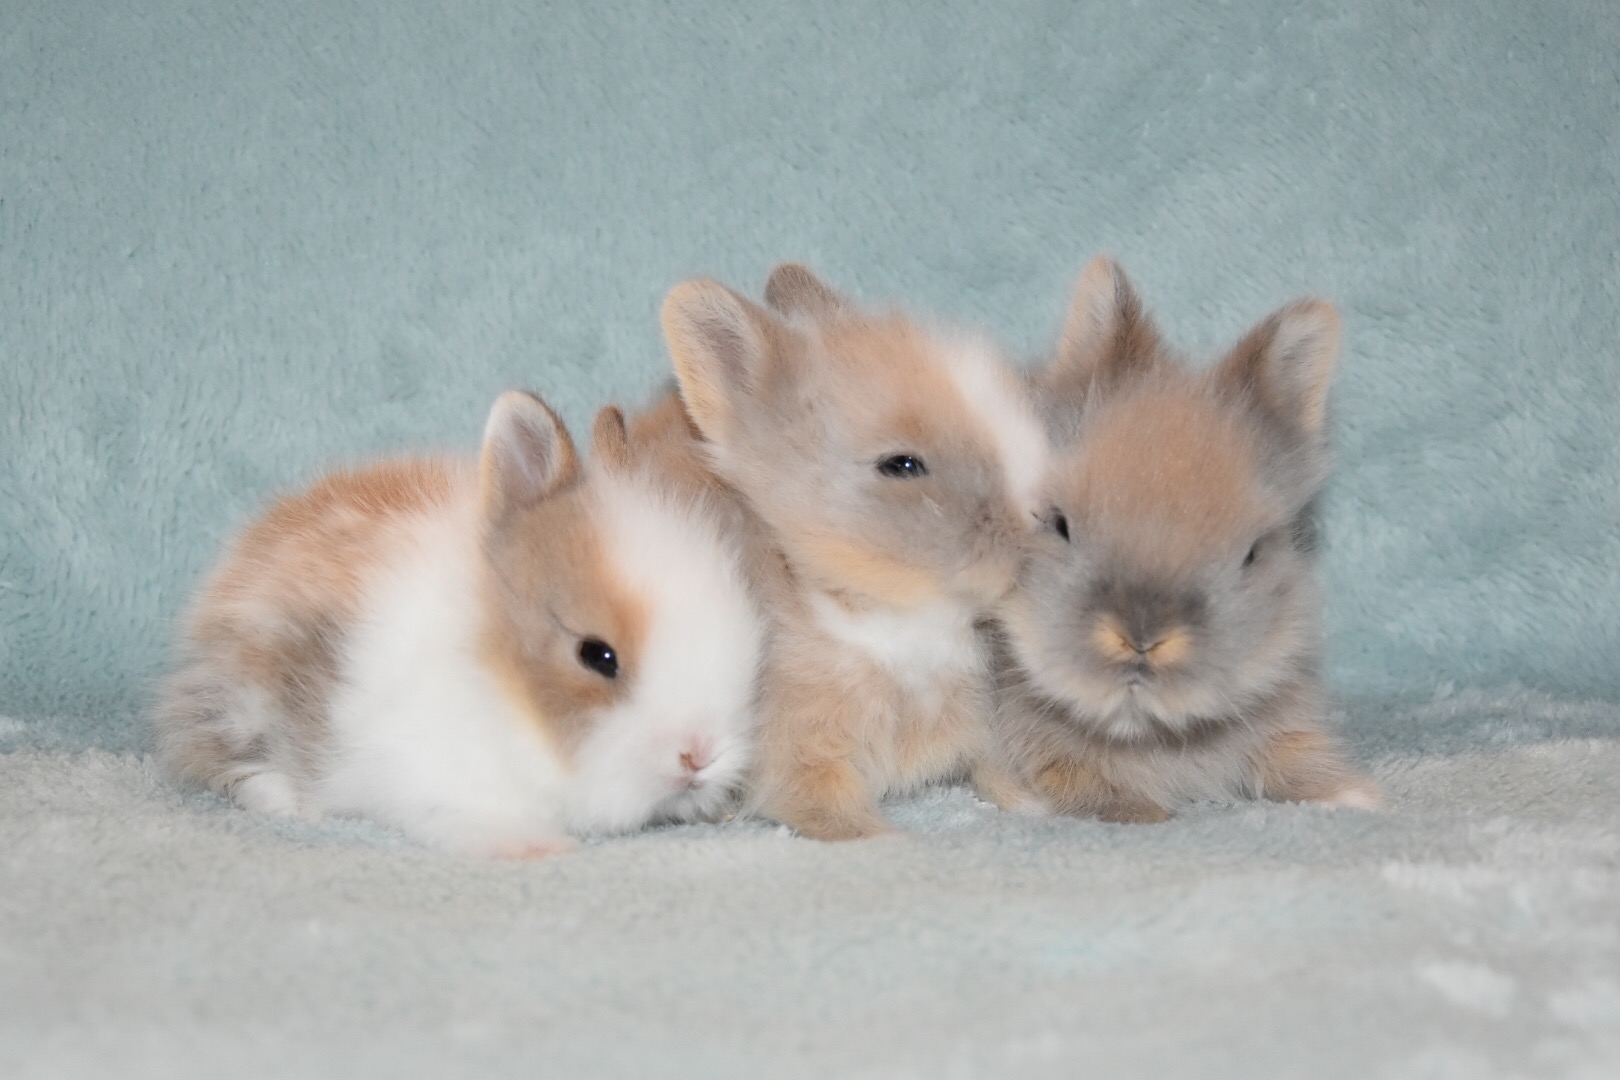 Hobby konijnen fokkerij van teddy dwerg konijnen Oudewater. Wij zijn hobbyfokkers van langharige ras teddy dwerg konijnen.Konijnenstal TeddyLove | Hobby fokker van Teddy Dwerg konijnen